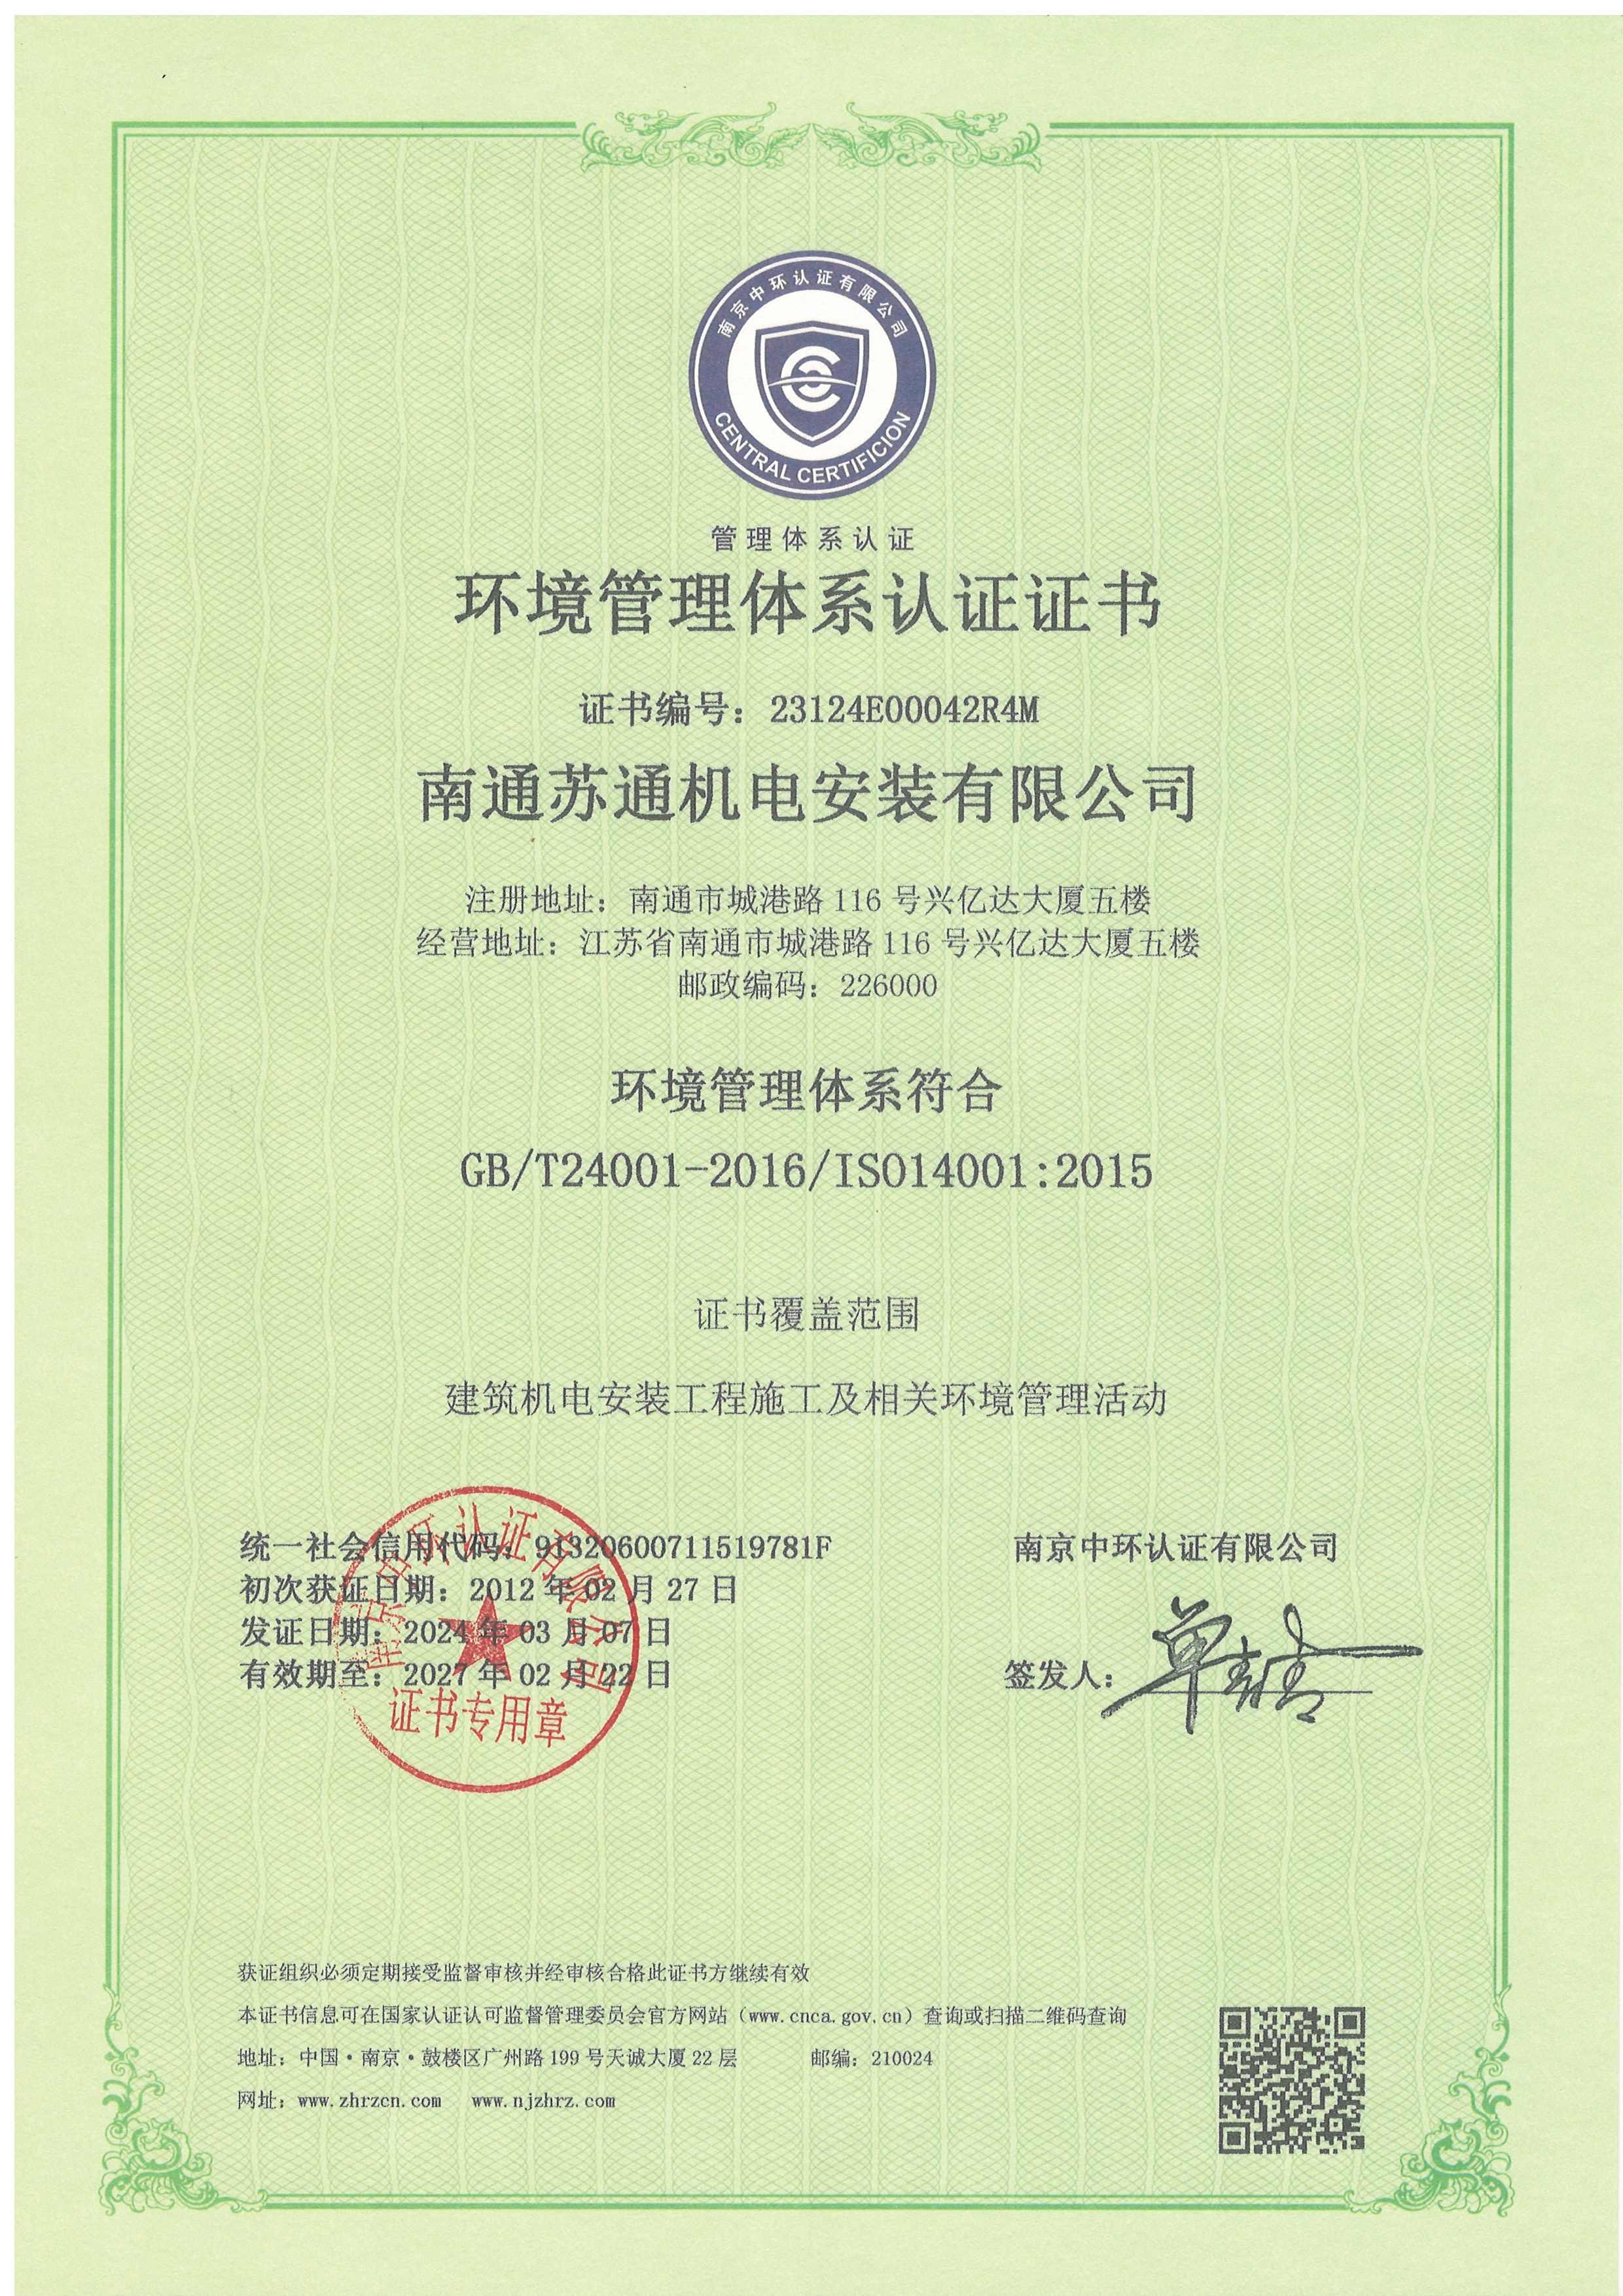 10、情形治理系统认证证书 